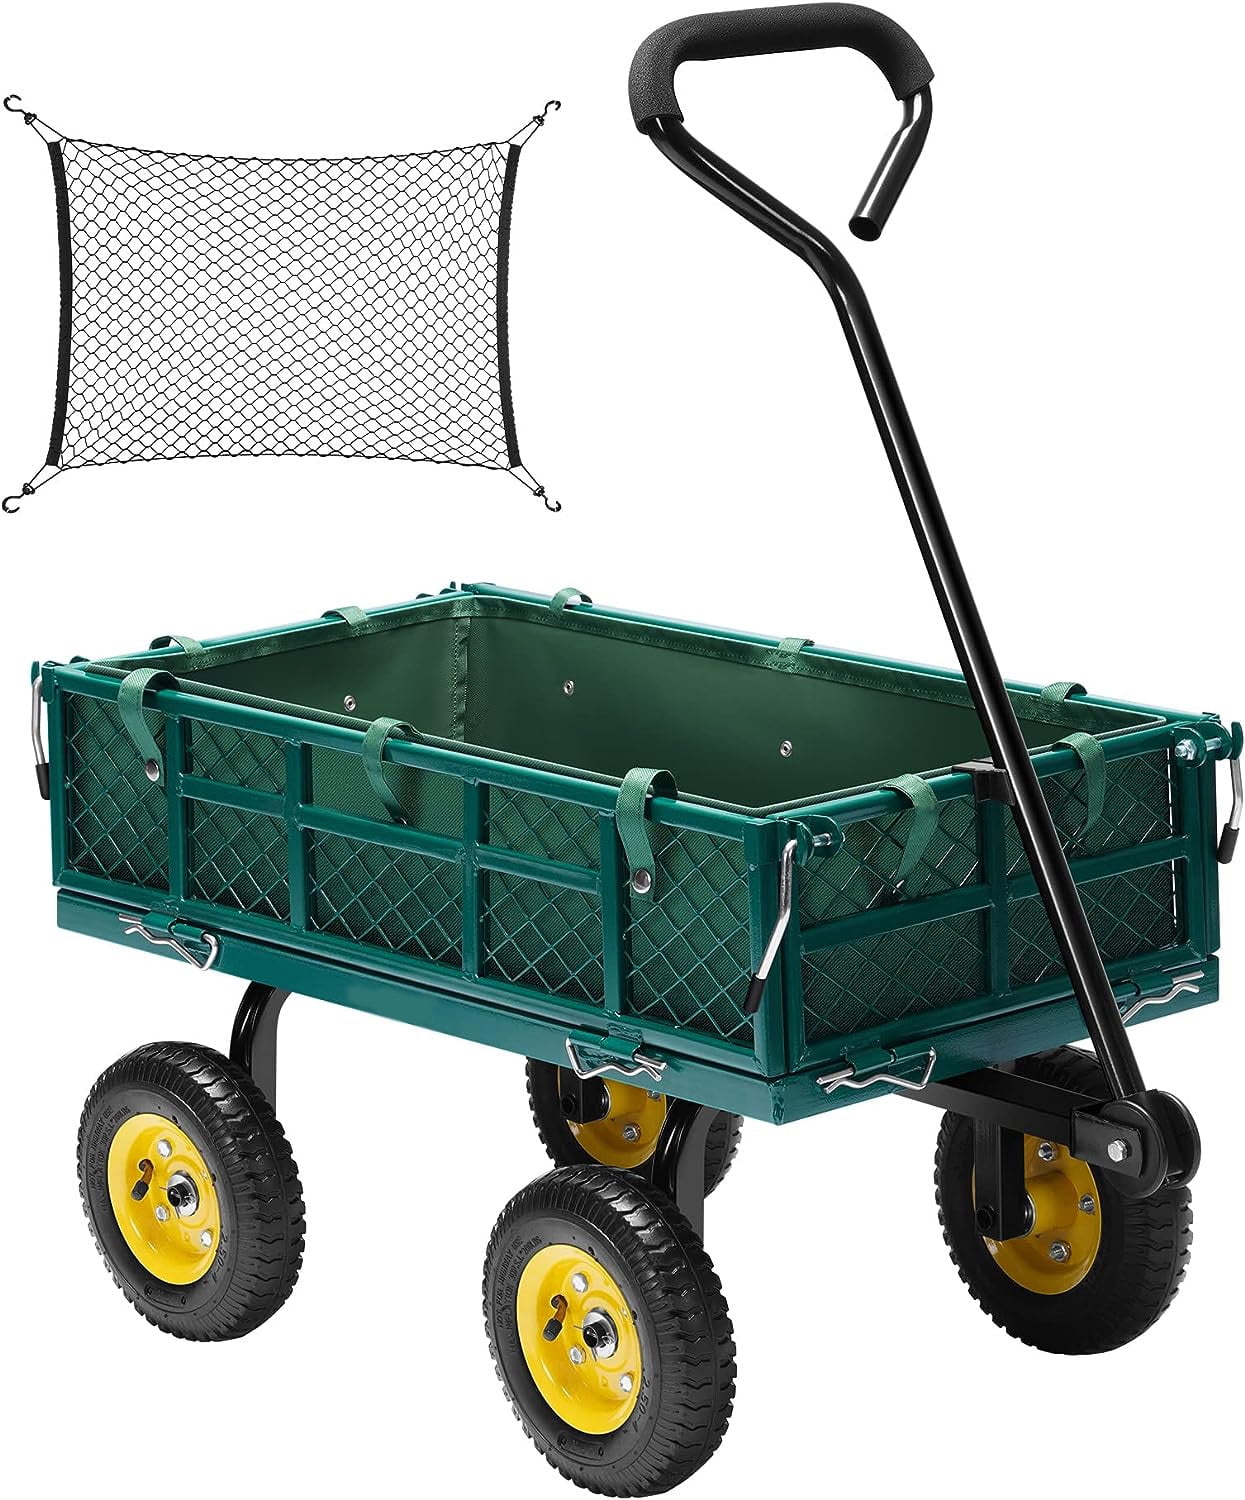 Gorilla Carts 4 Cu. Ft. 600 Lb. Poly Garden Cart - Thomas Do-it Center